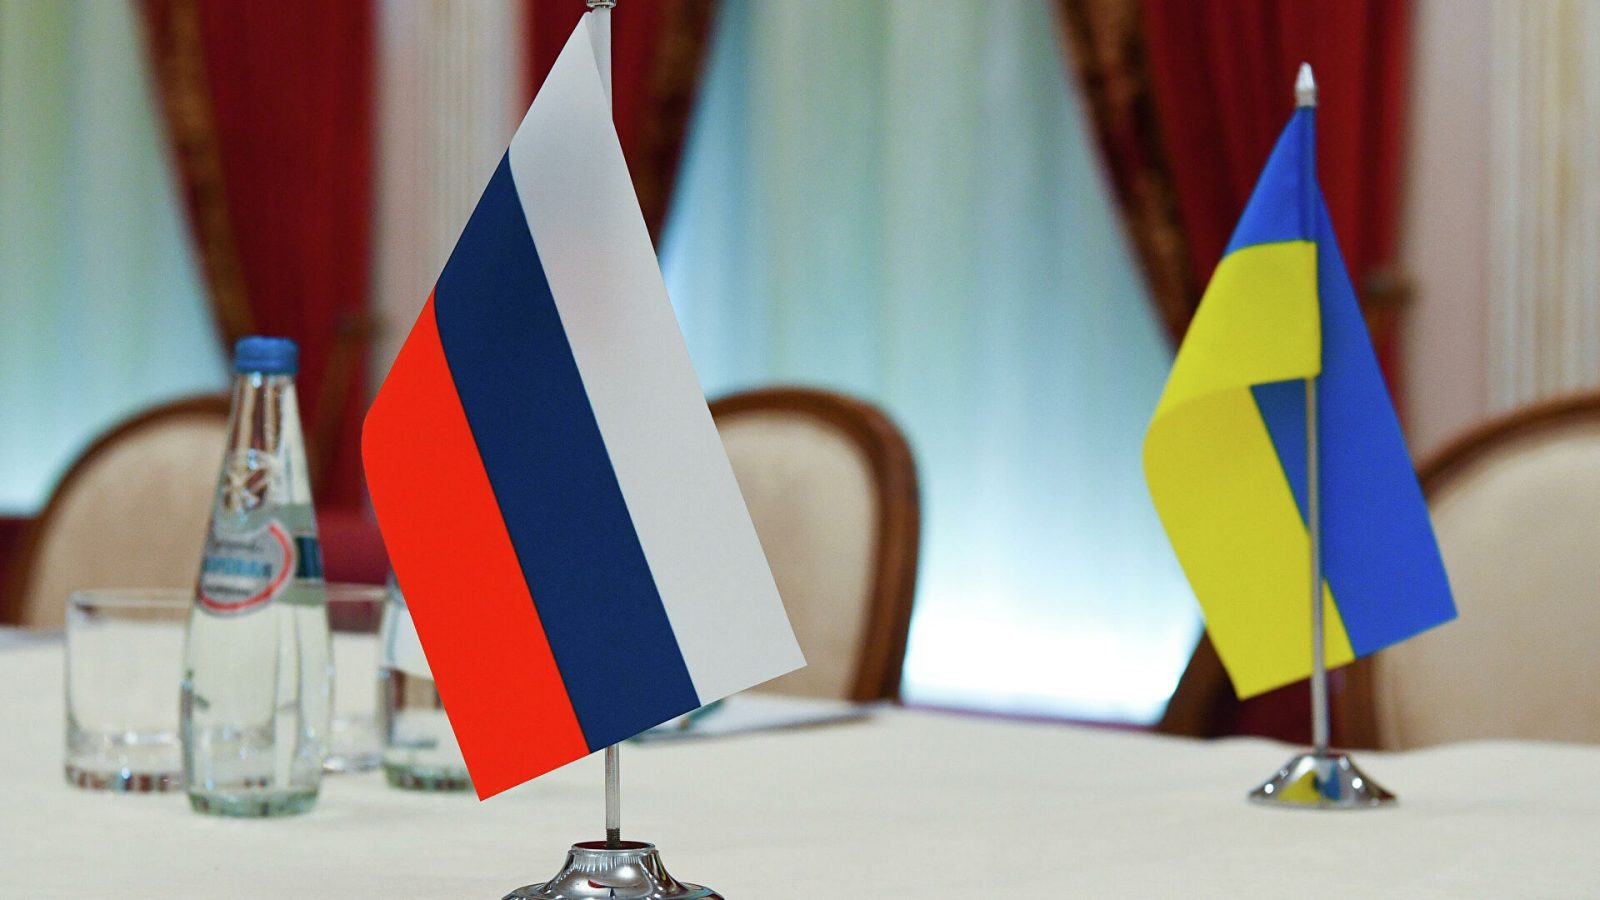 الكرملين: تقدم إيجابي في المفاوضات مع أوكرانيا ولكن..